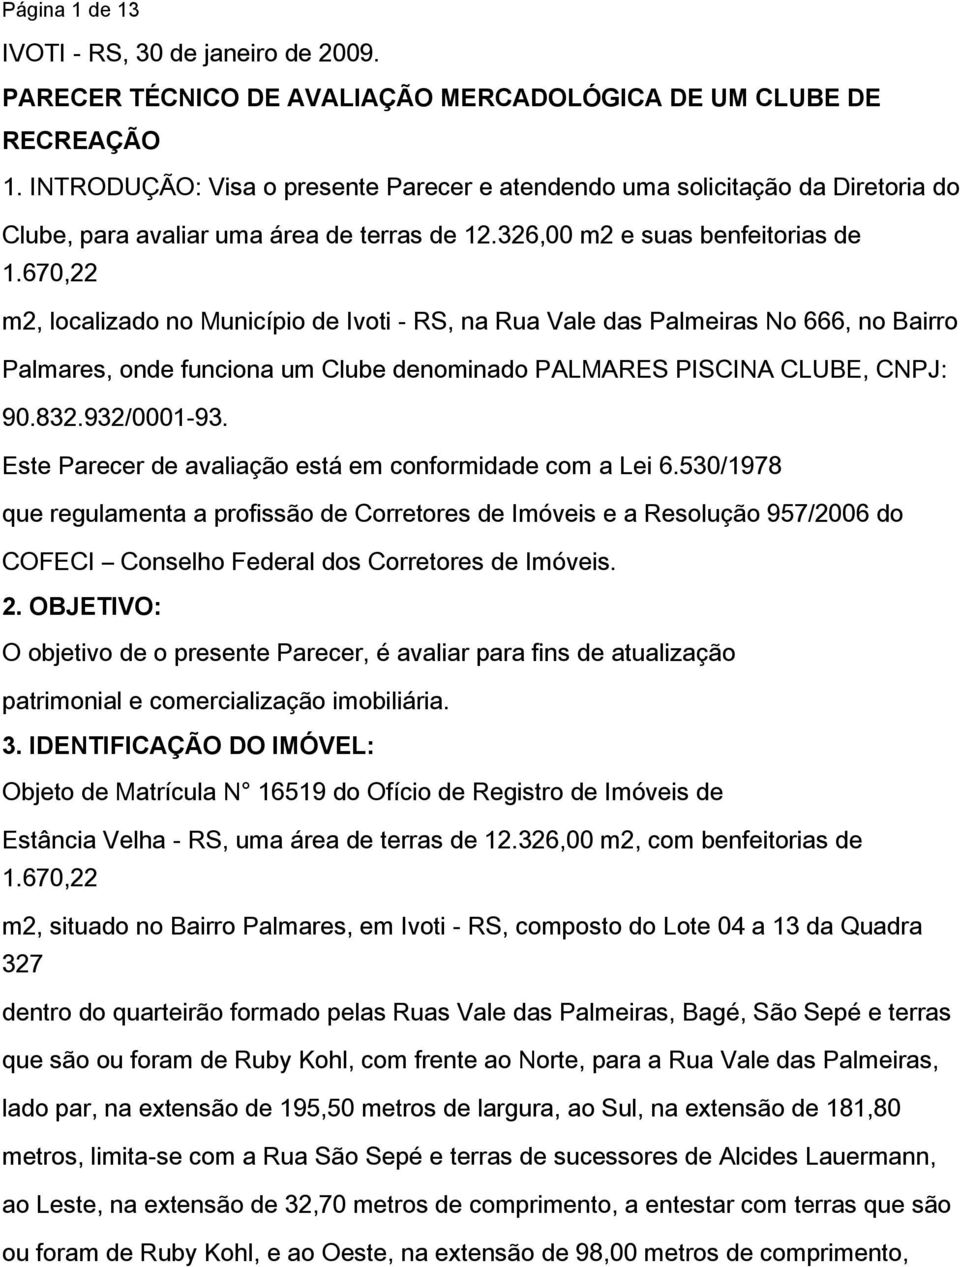 670,22 m2, localizado no Município de Ivoti - RS, na Rua Vale das Palmeiras No 666, no Bairro Palmares, onde funciona um Clube denominado PALMARES PISCINA CLUBE, CNPJ: 90.832.932/0001-93.